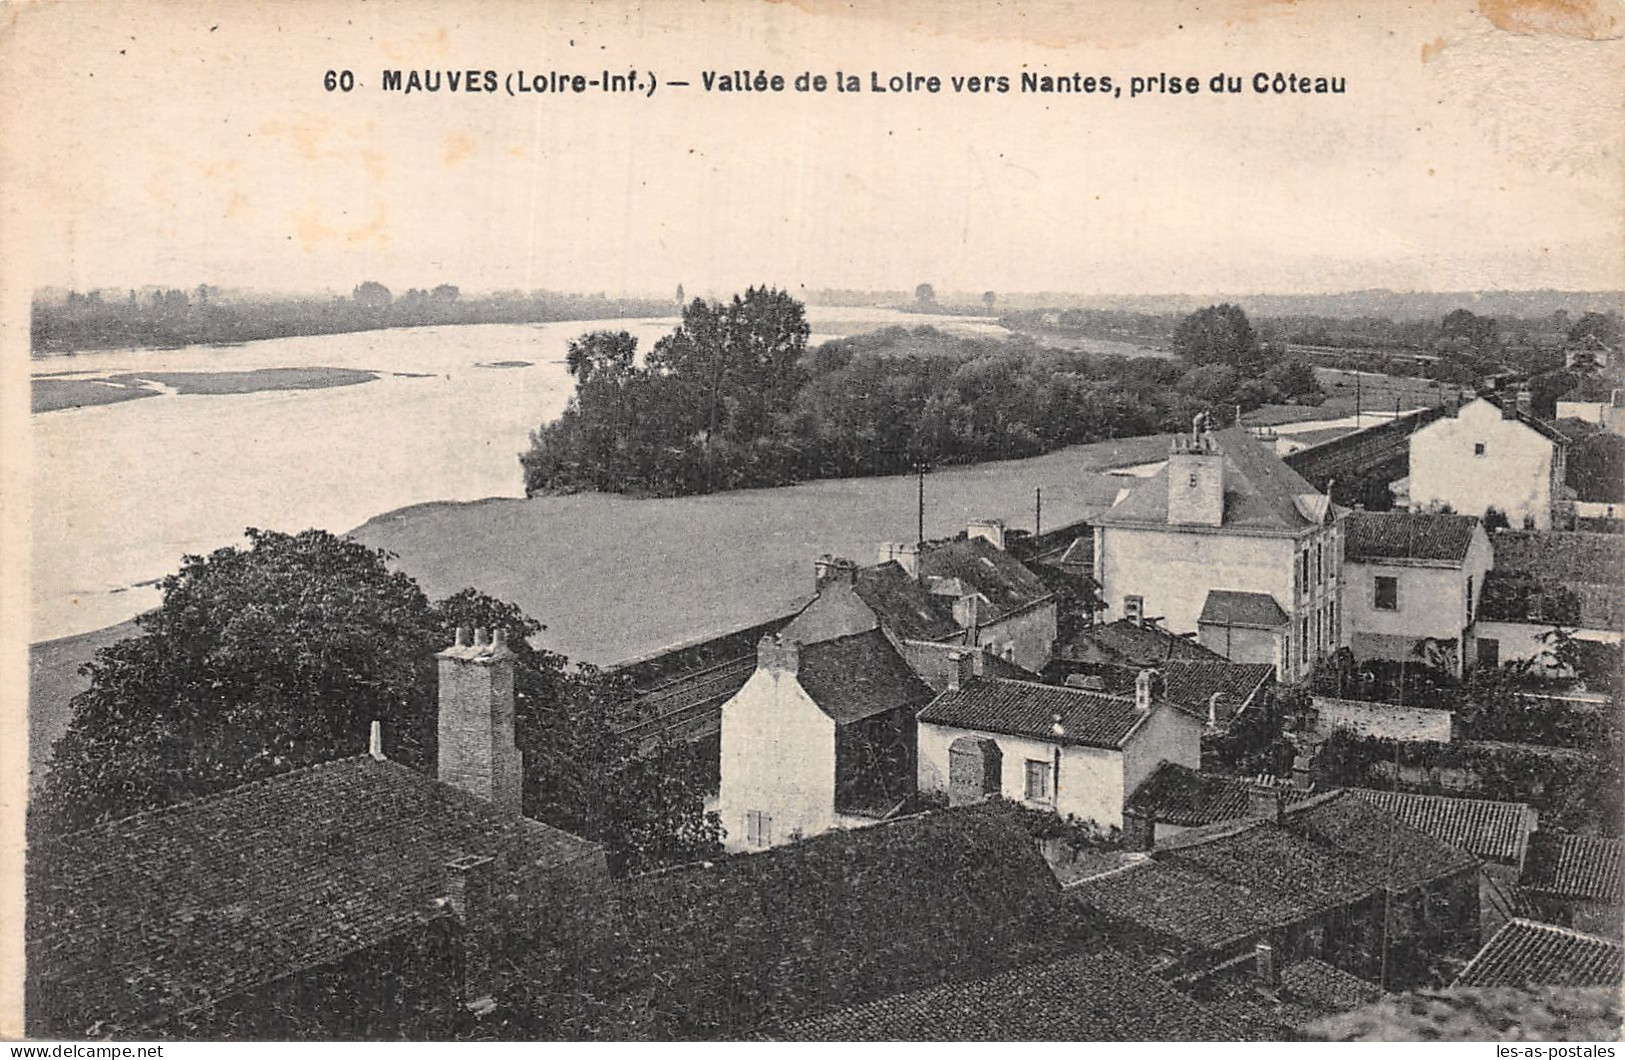 44 MAUVES VALLEE DE LA LOIRE - Mauves-sur-Loire